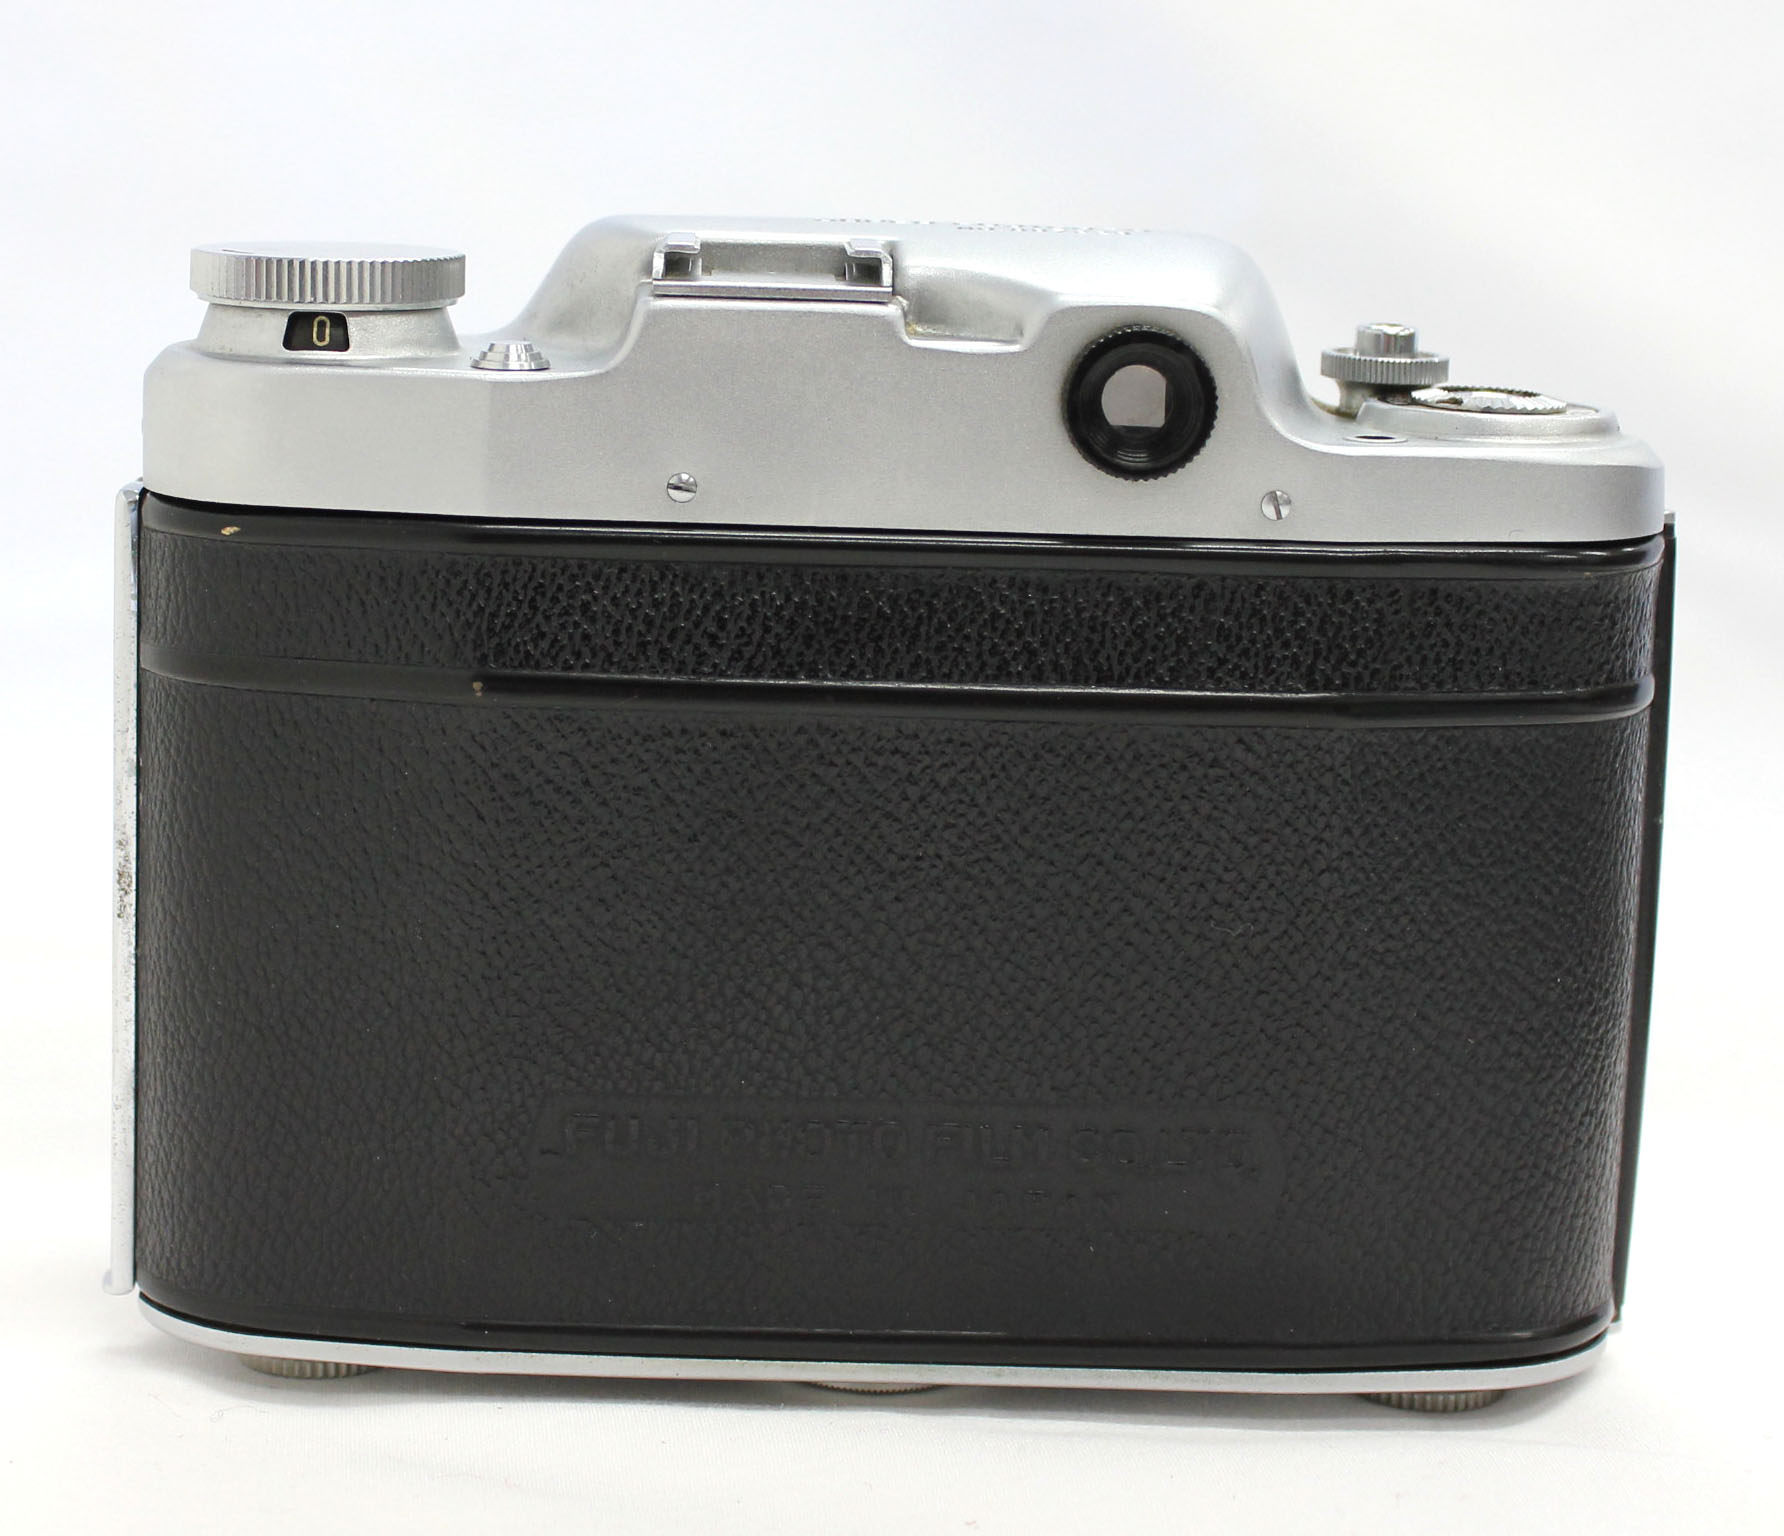  Fuji Super Fujica-6 Six 6x6 Medium Format Film Camera with Fujinar 75mm F/3.5 from Japan Photo 8